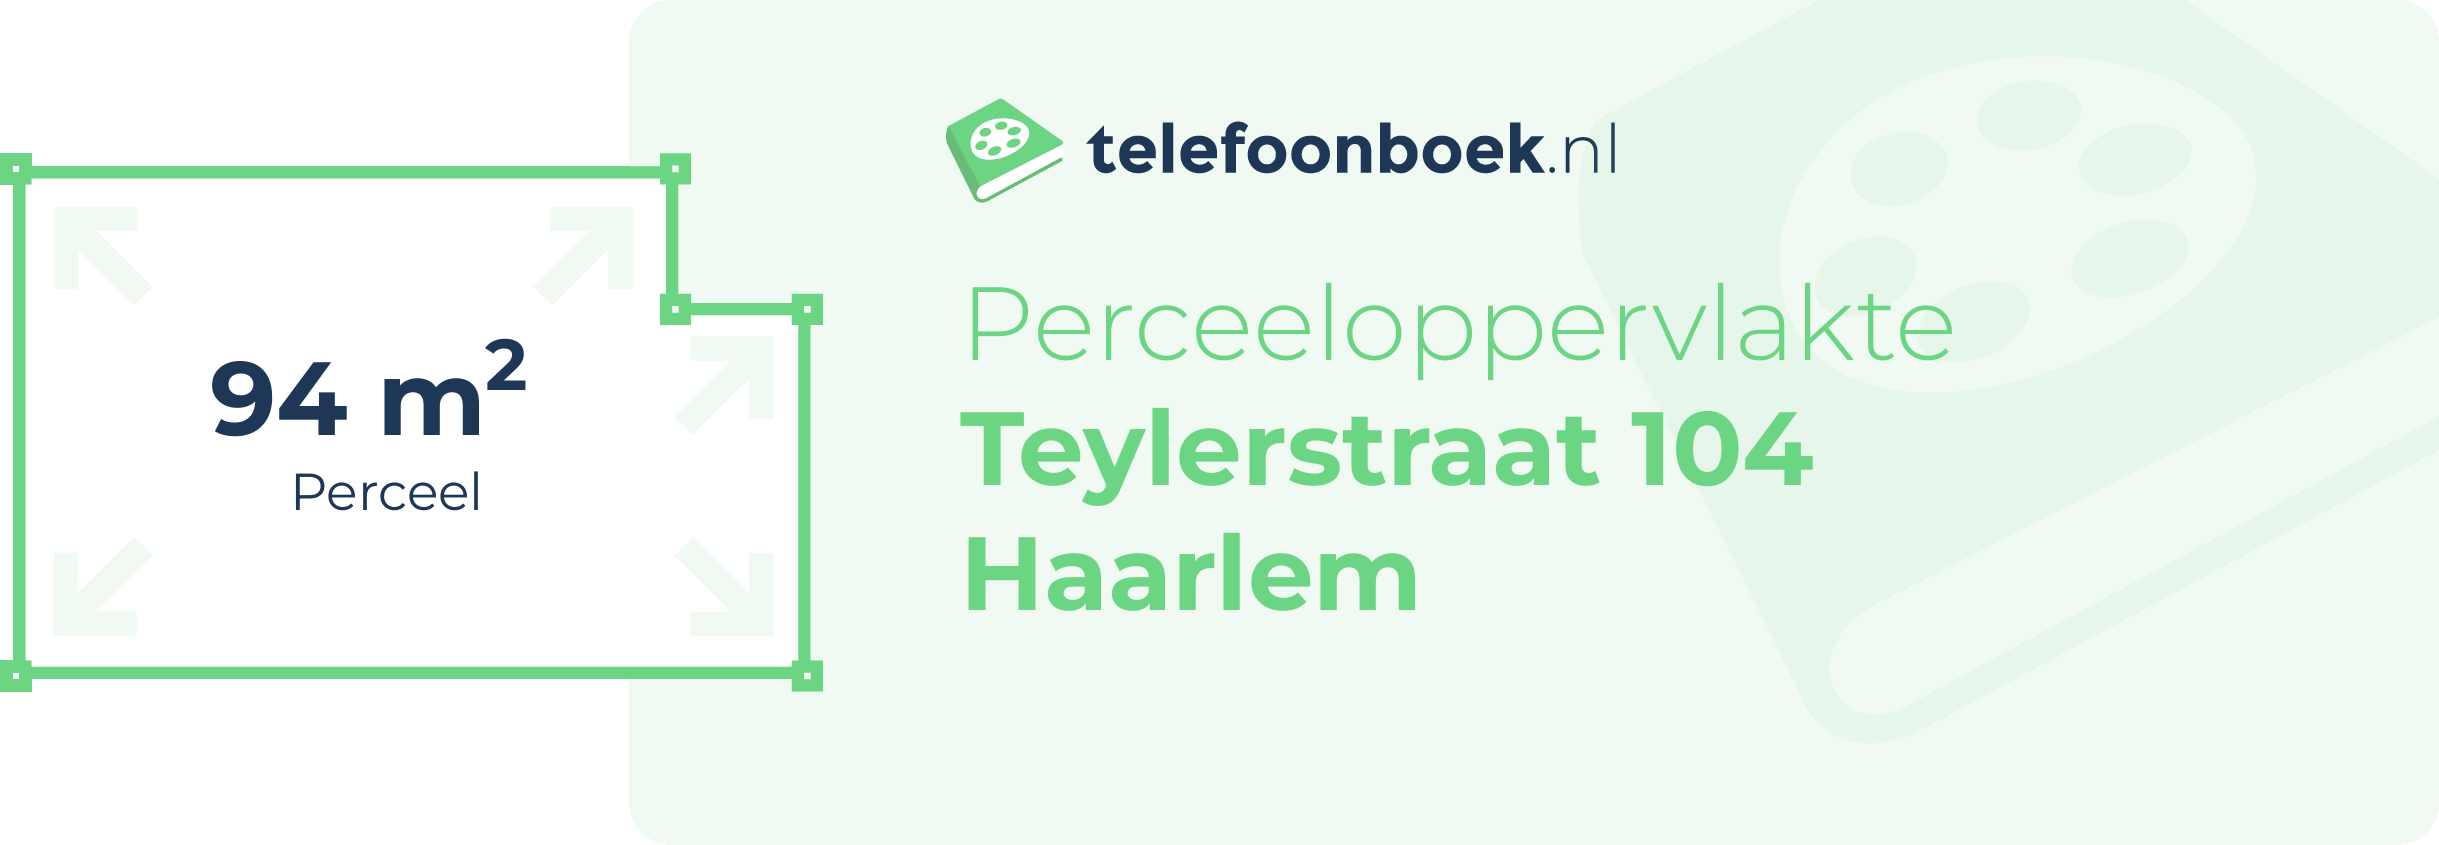 Perceeloppervlakte Teylerstraat 104 Haarlem